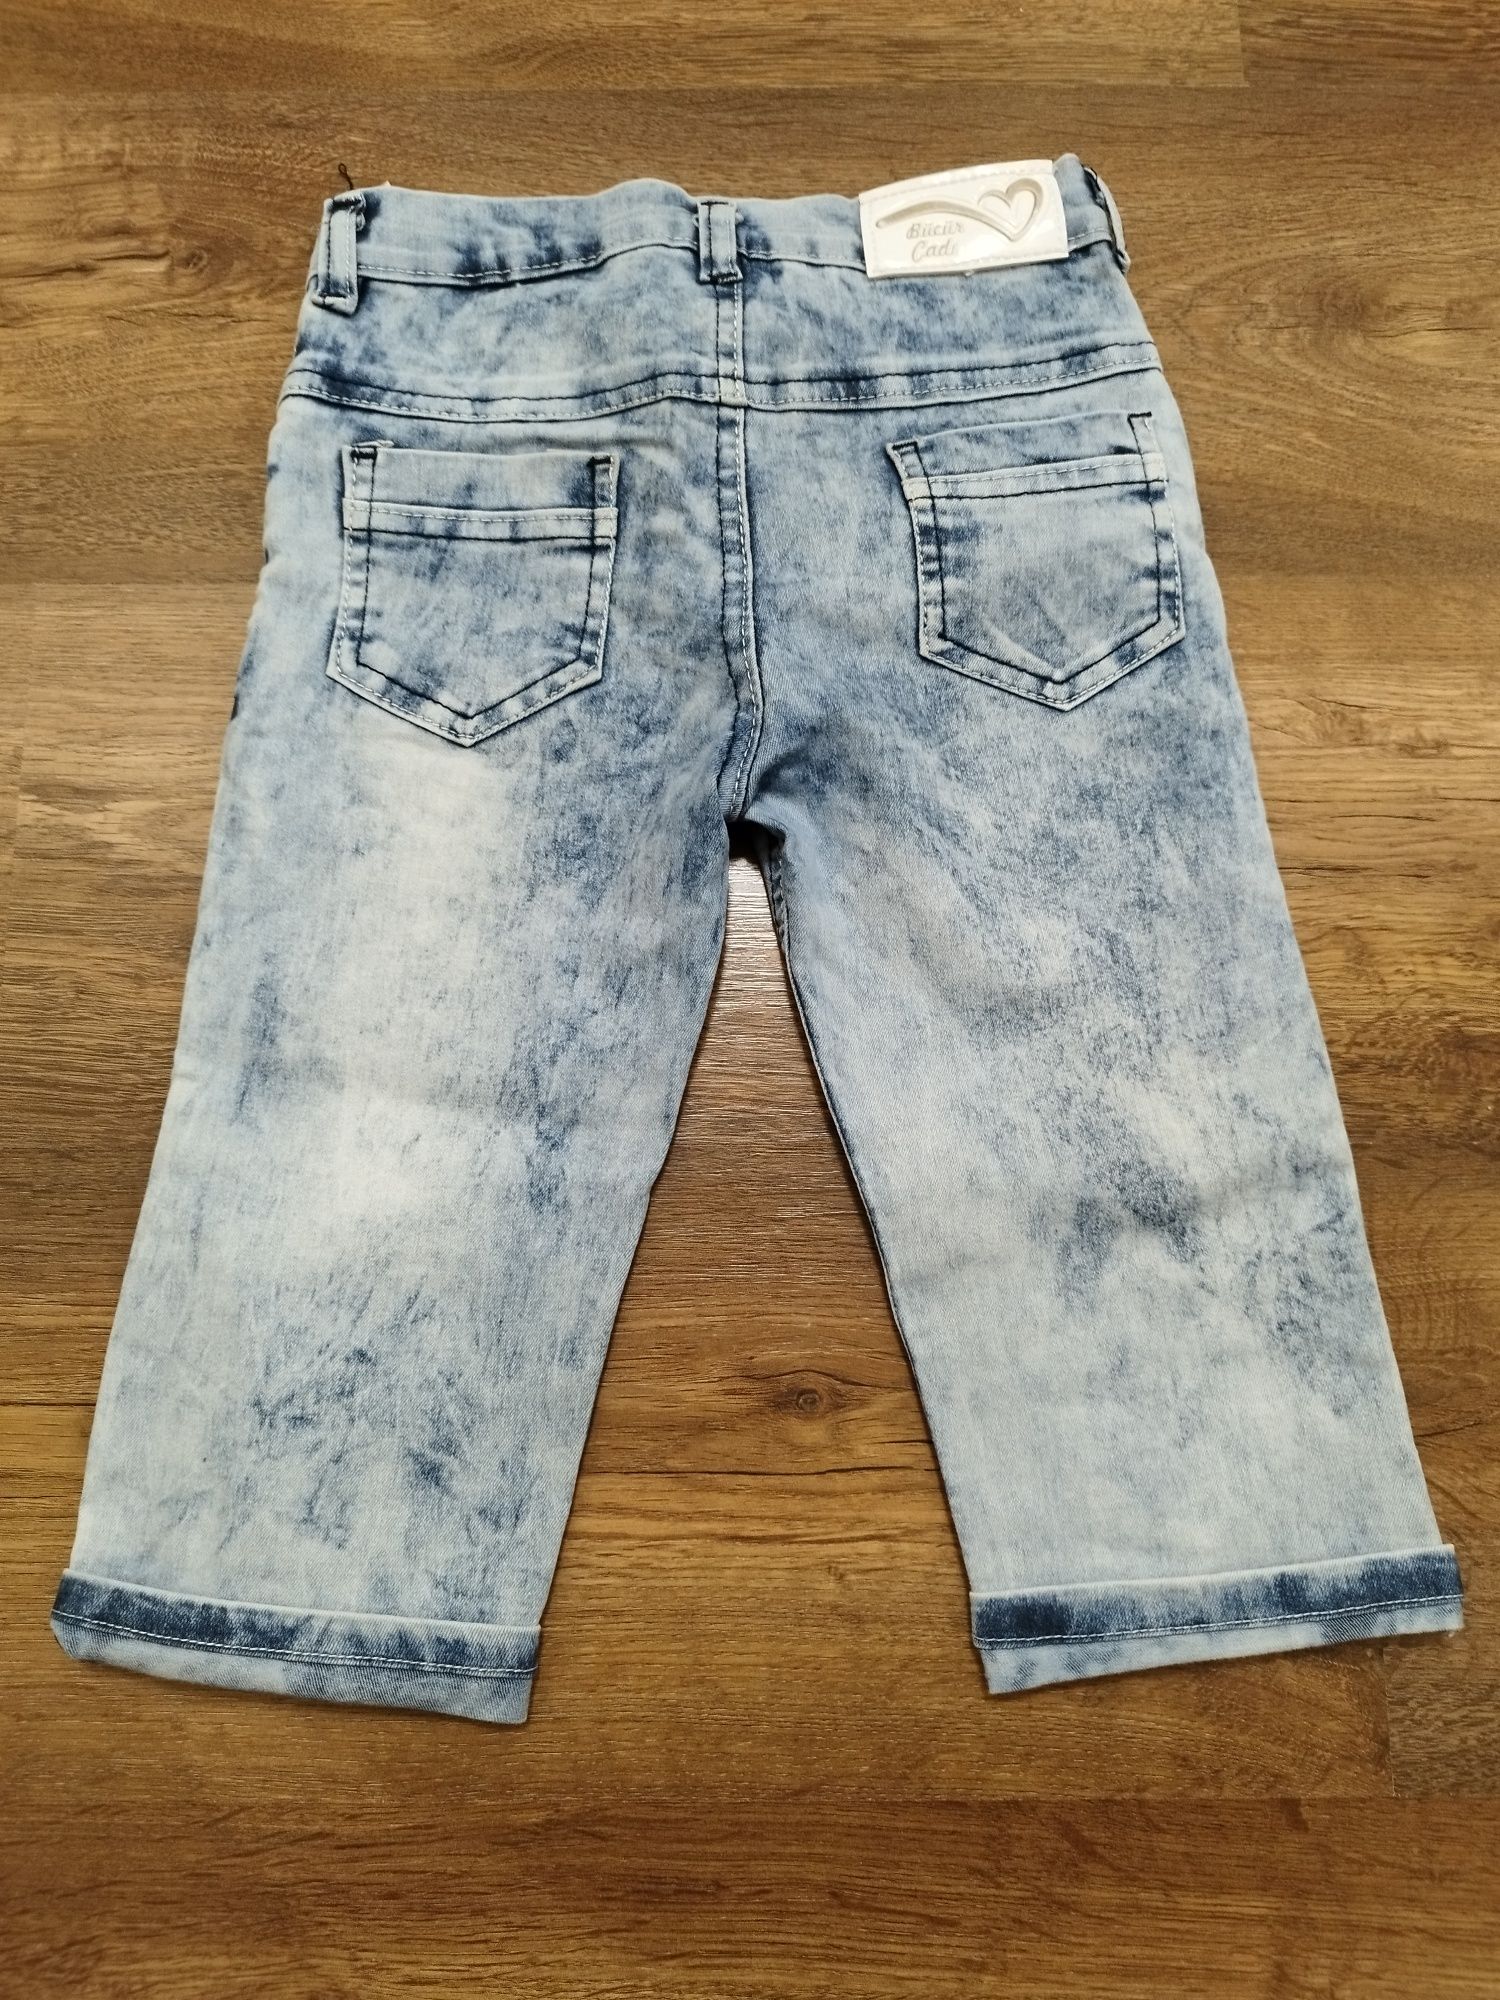 Spodnie 3/4 jeansowe dla dziewczynki R.134